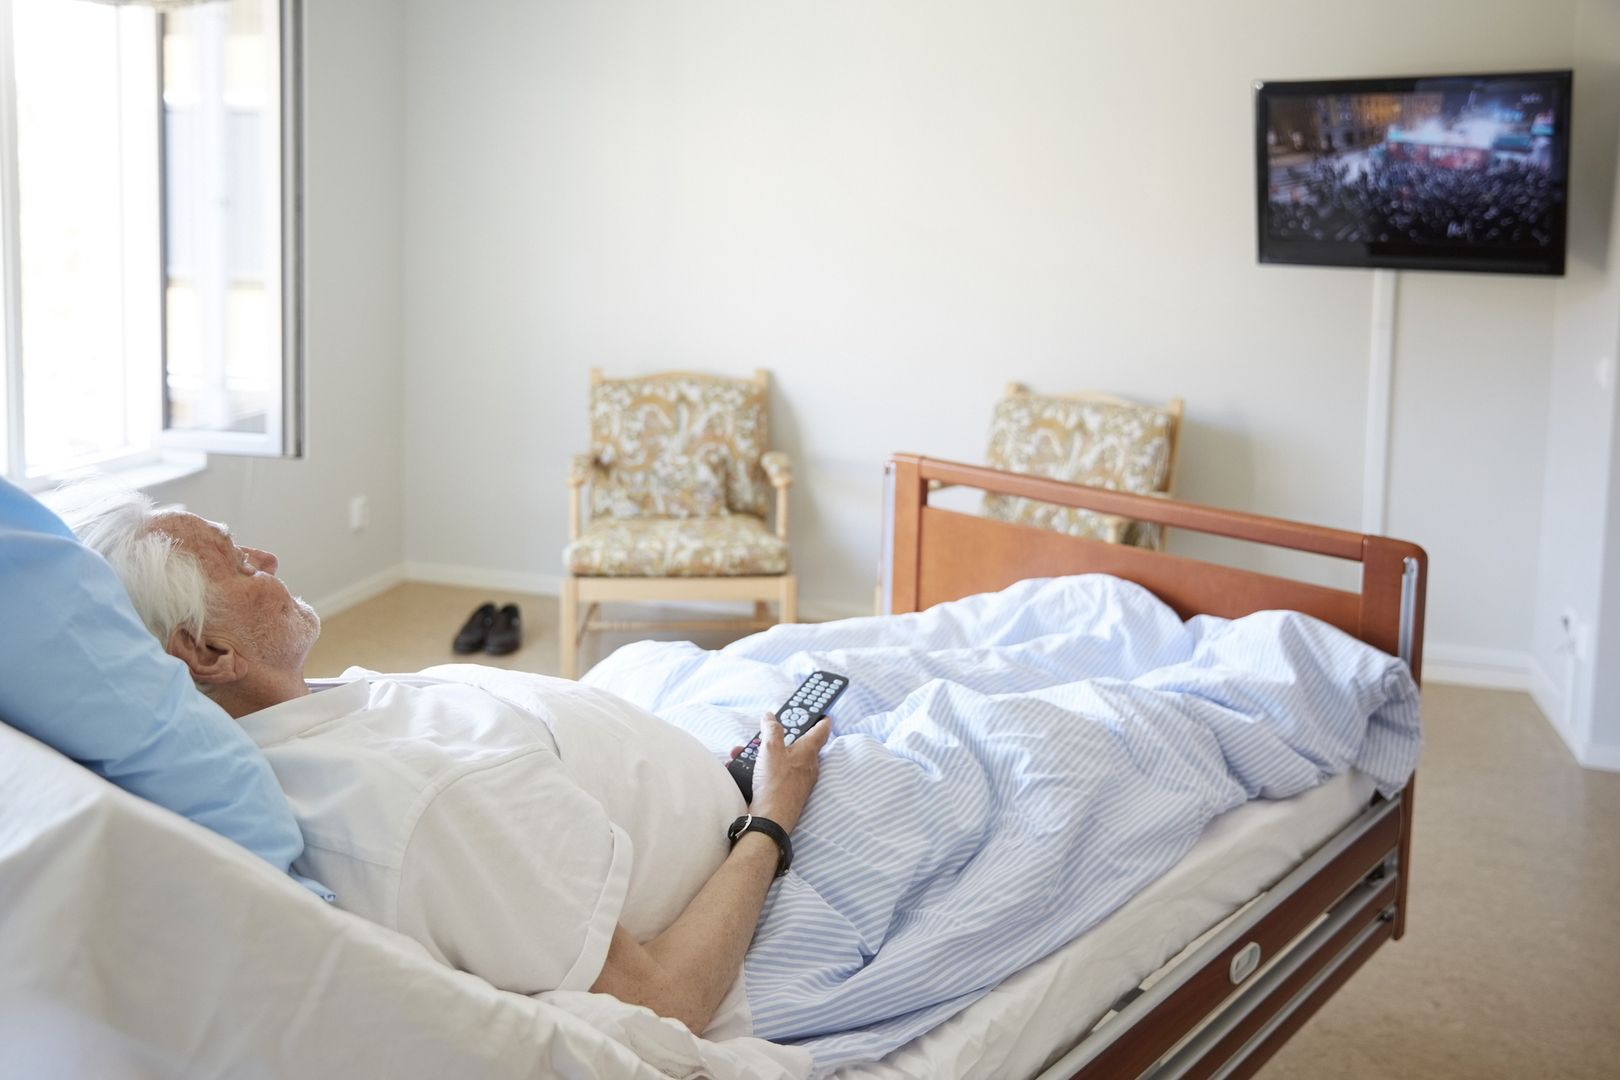 Szpital zabronił pacjentom korzystać z telewizorów. "Podobno za drogo"